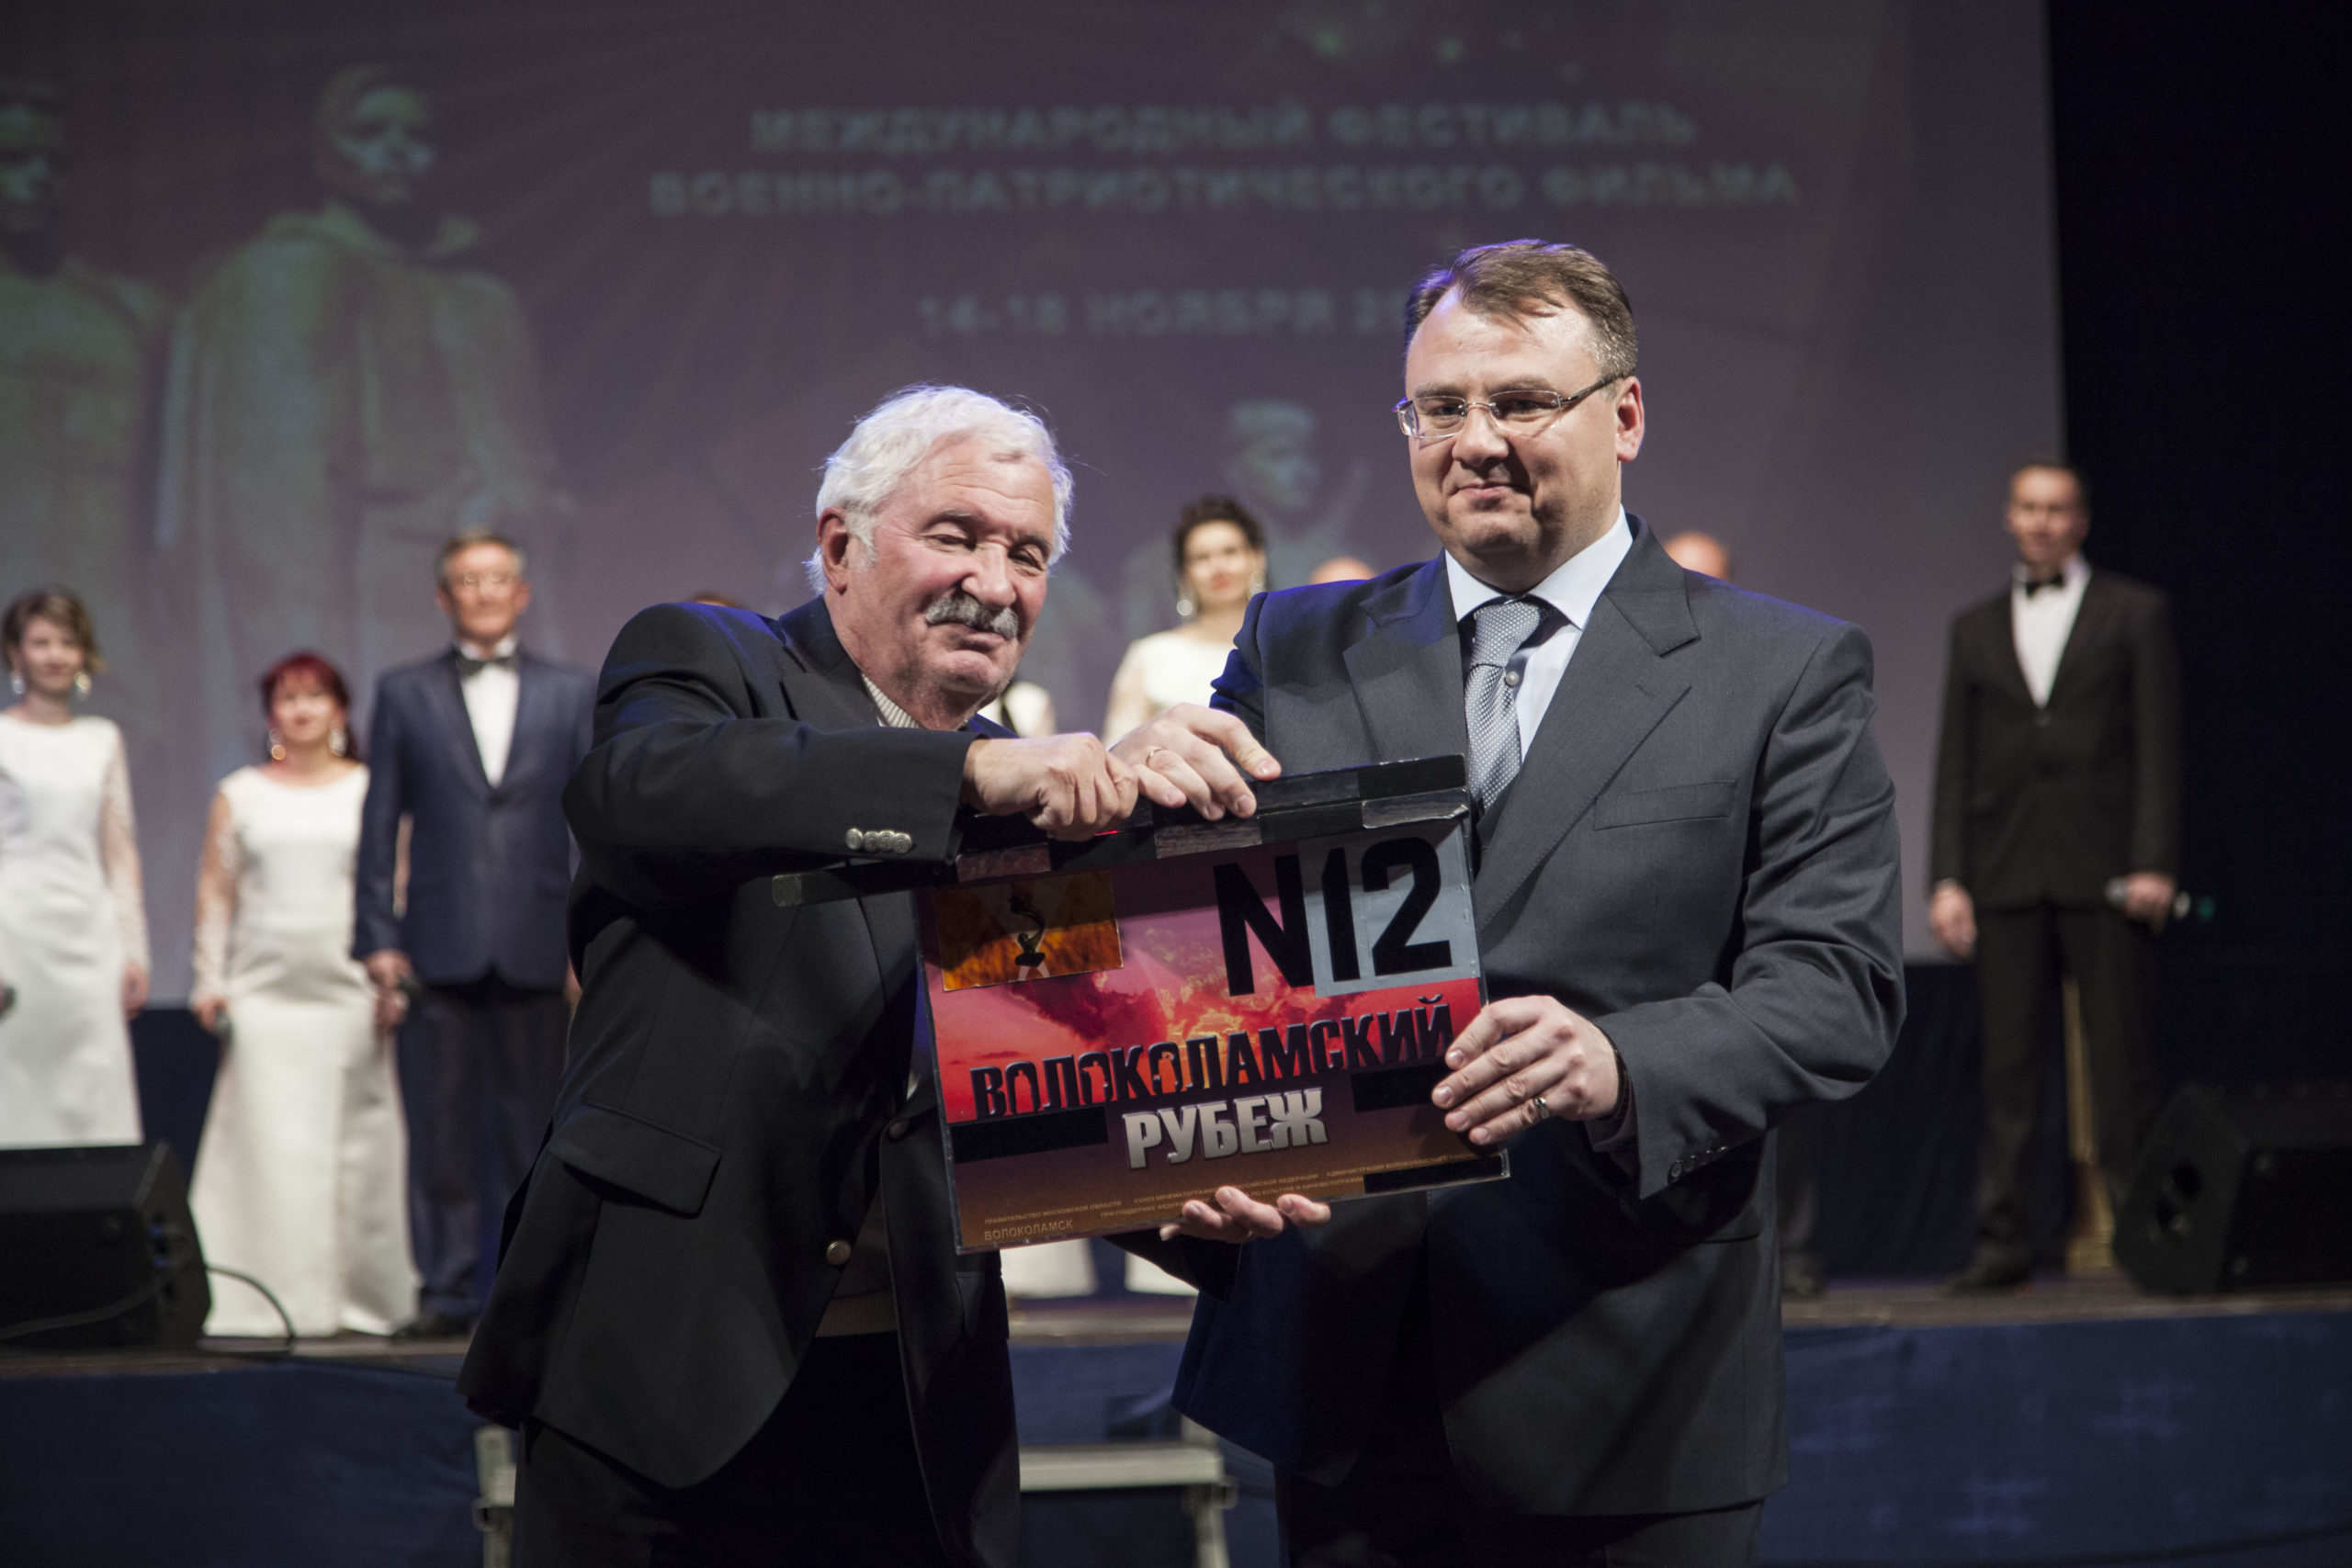 При поддержке НФПП прошел XII Международный фестиваль военно-патриотического фильма «Волоколамский рубеж»